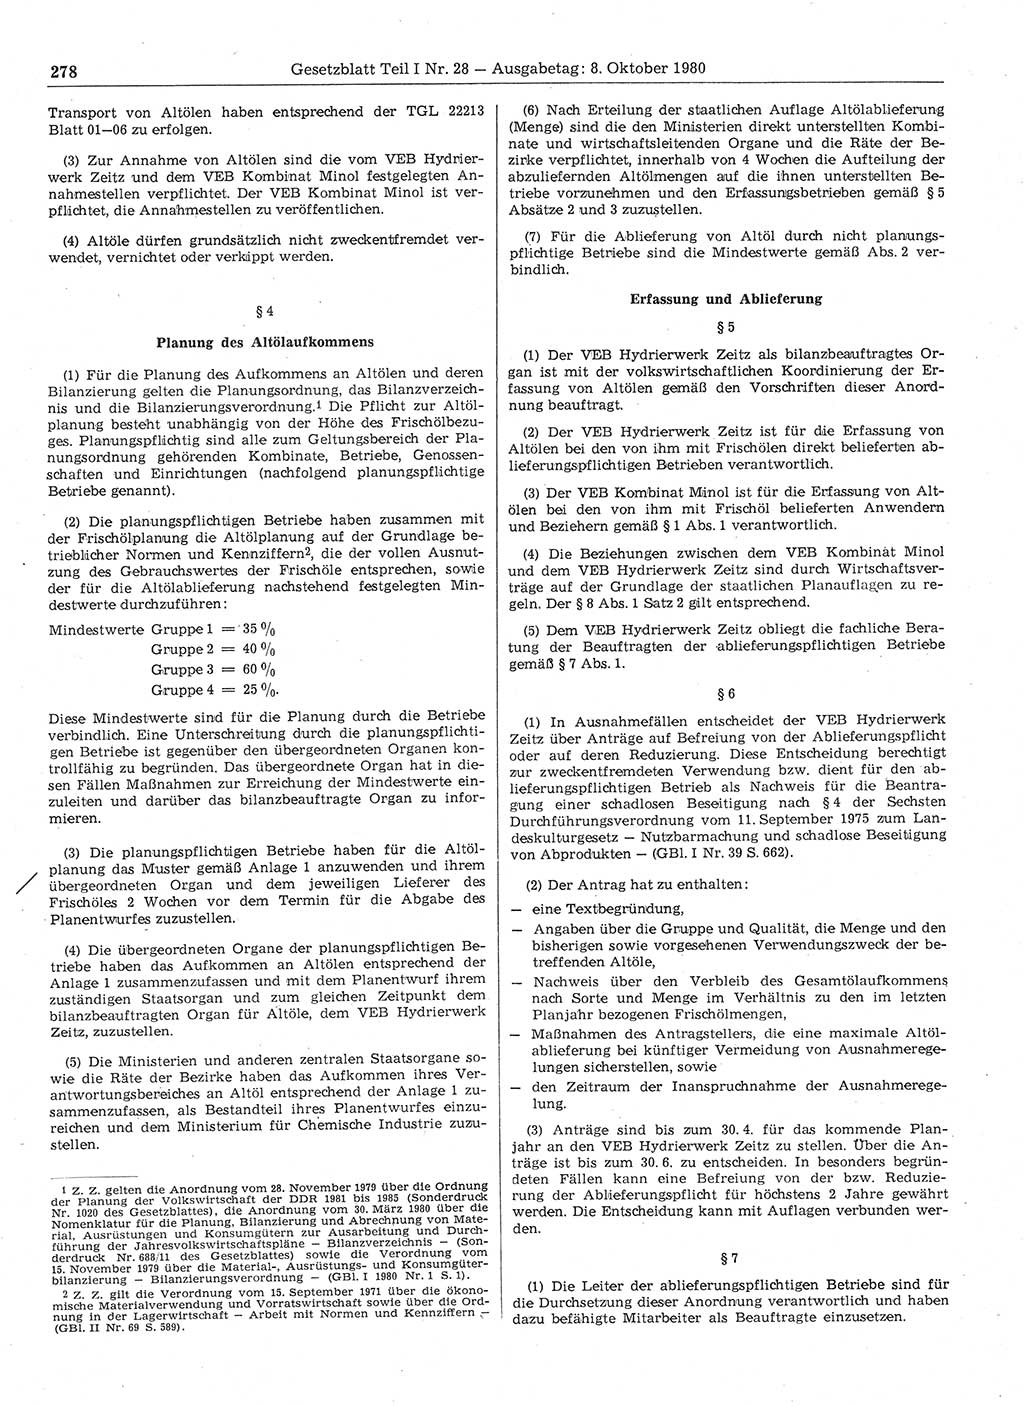 Gesetzblatt (GBl.) der Deutschen Demokratischen Republik (DDR) Teil Ⅰ 1980, Seite 278 (GBl. DDR Ⅰ 1980, S. 278)